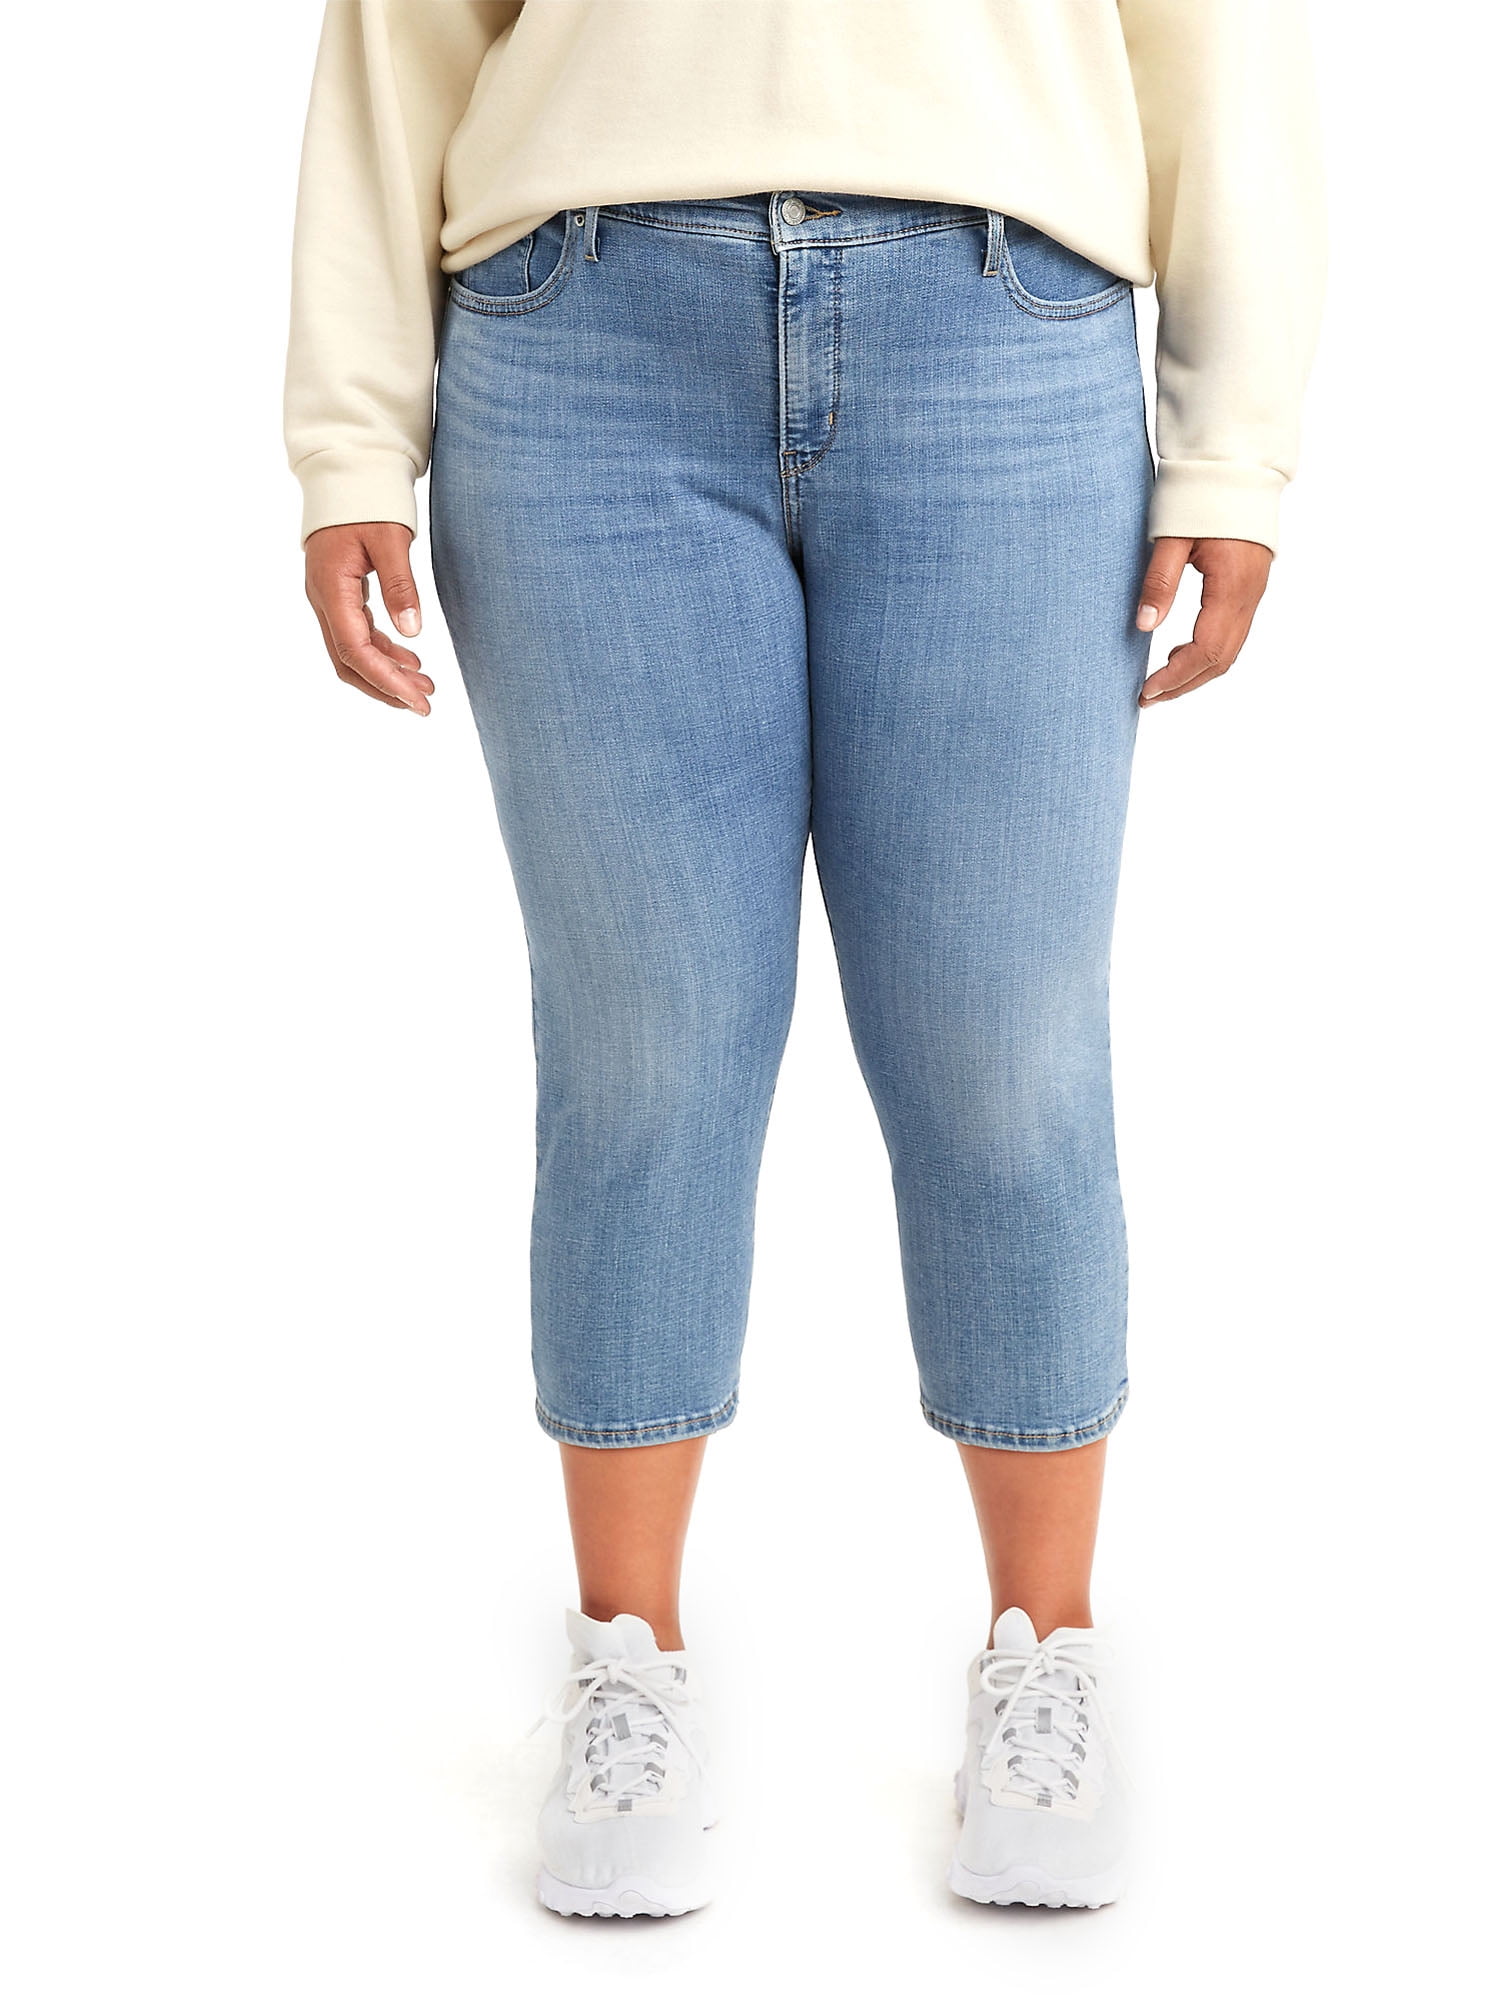 Levi's Women's Plus Size 311 Shaping Skinny Capri Jeans 